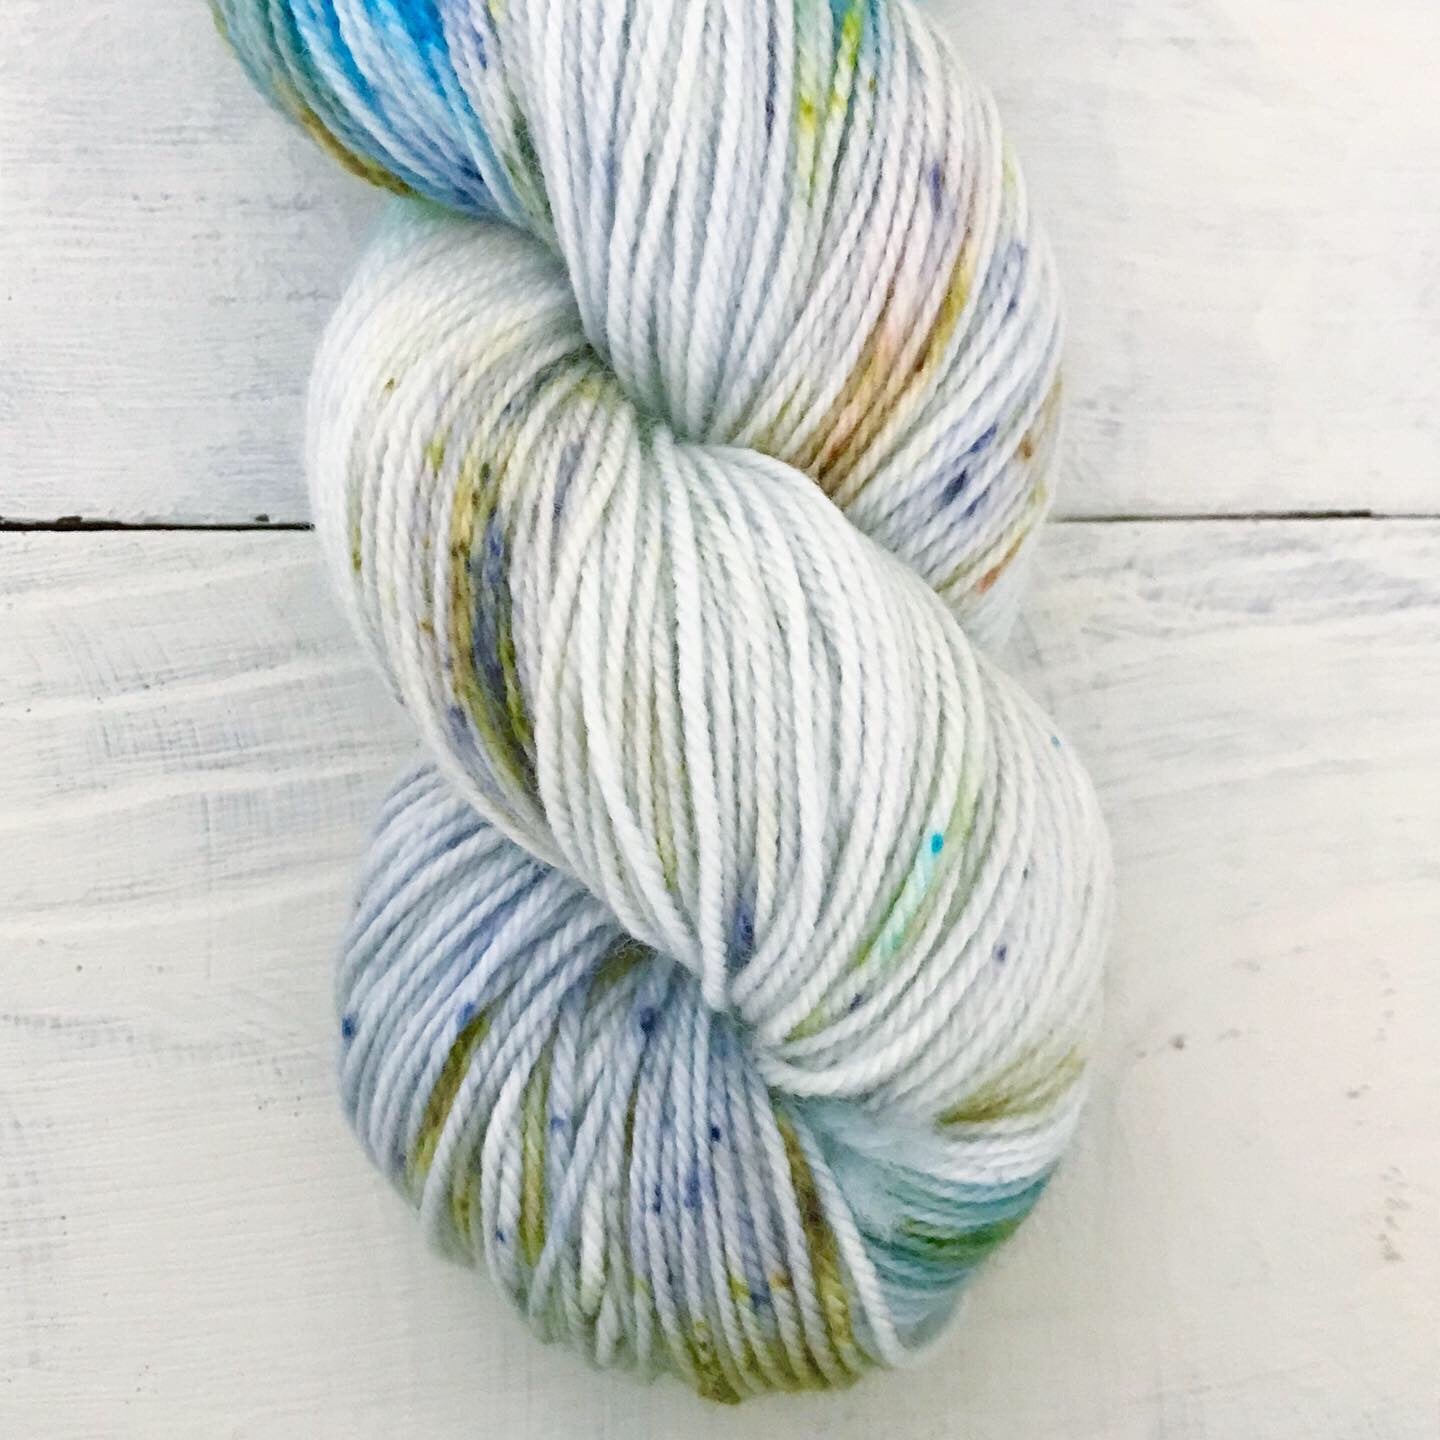 Hand-dyed yarn No.61 sock yarn "Aquarium"